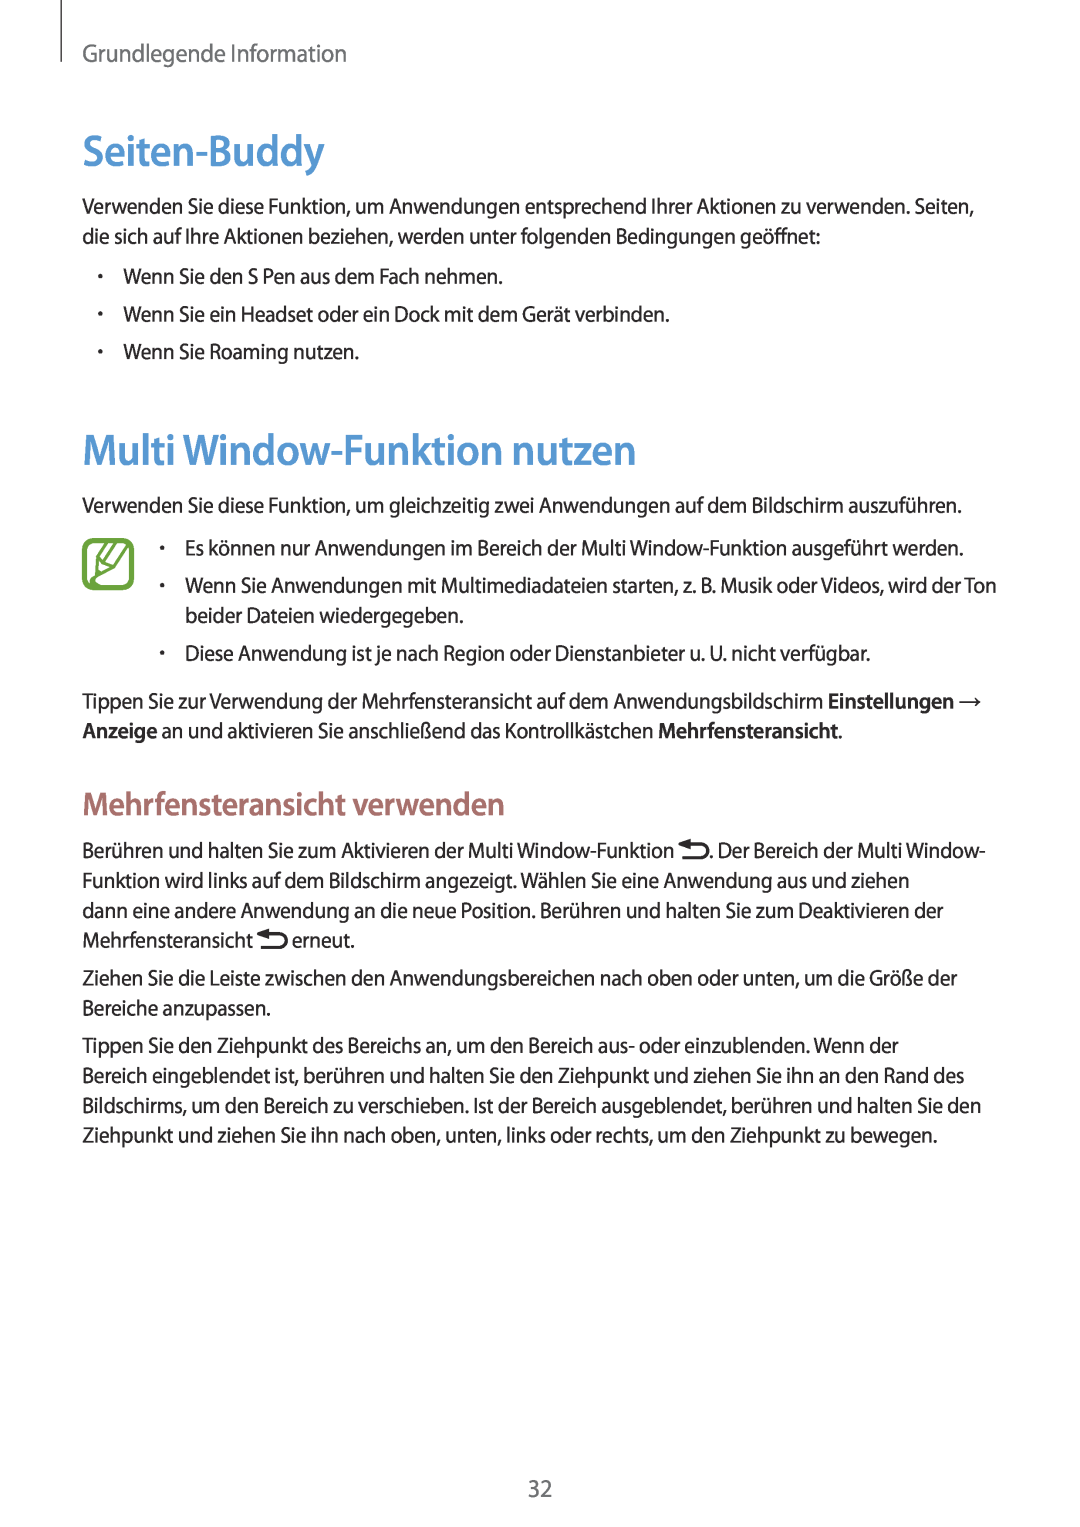 Samsung GT-N7100TADO2U Seiten-Buddy, Multi Window-Funktion nutzen, Mehrfensteransicht verwenden, Grundlegende Information 